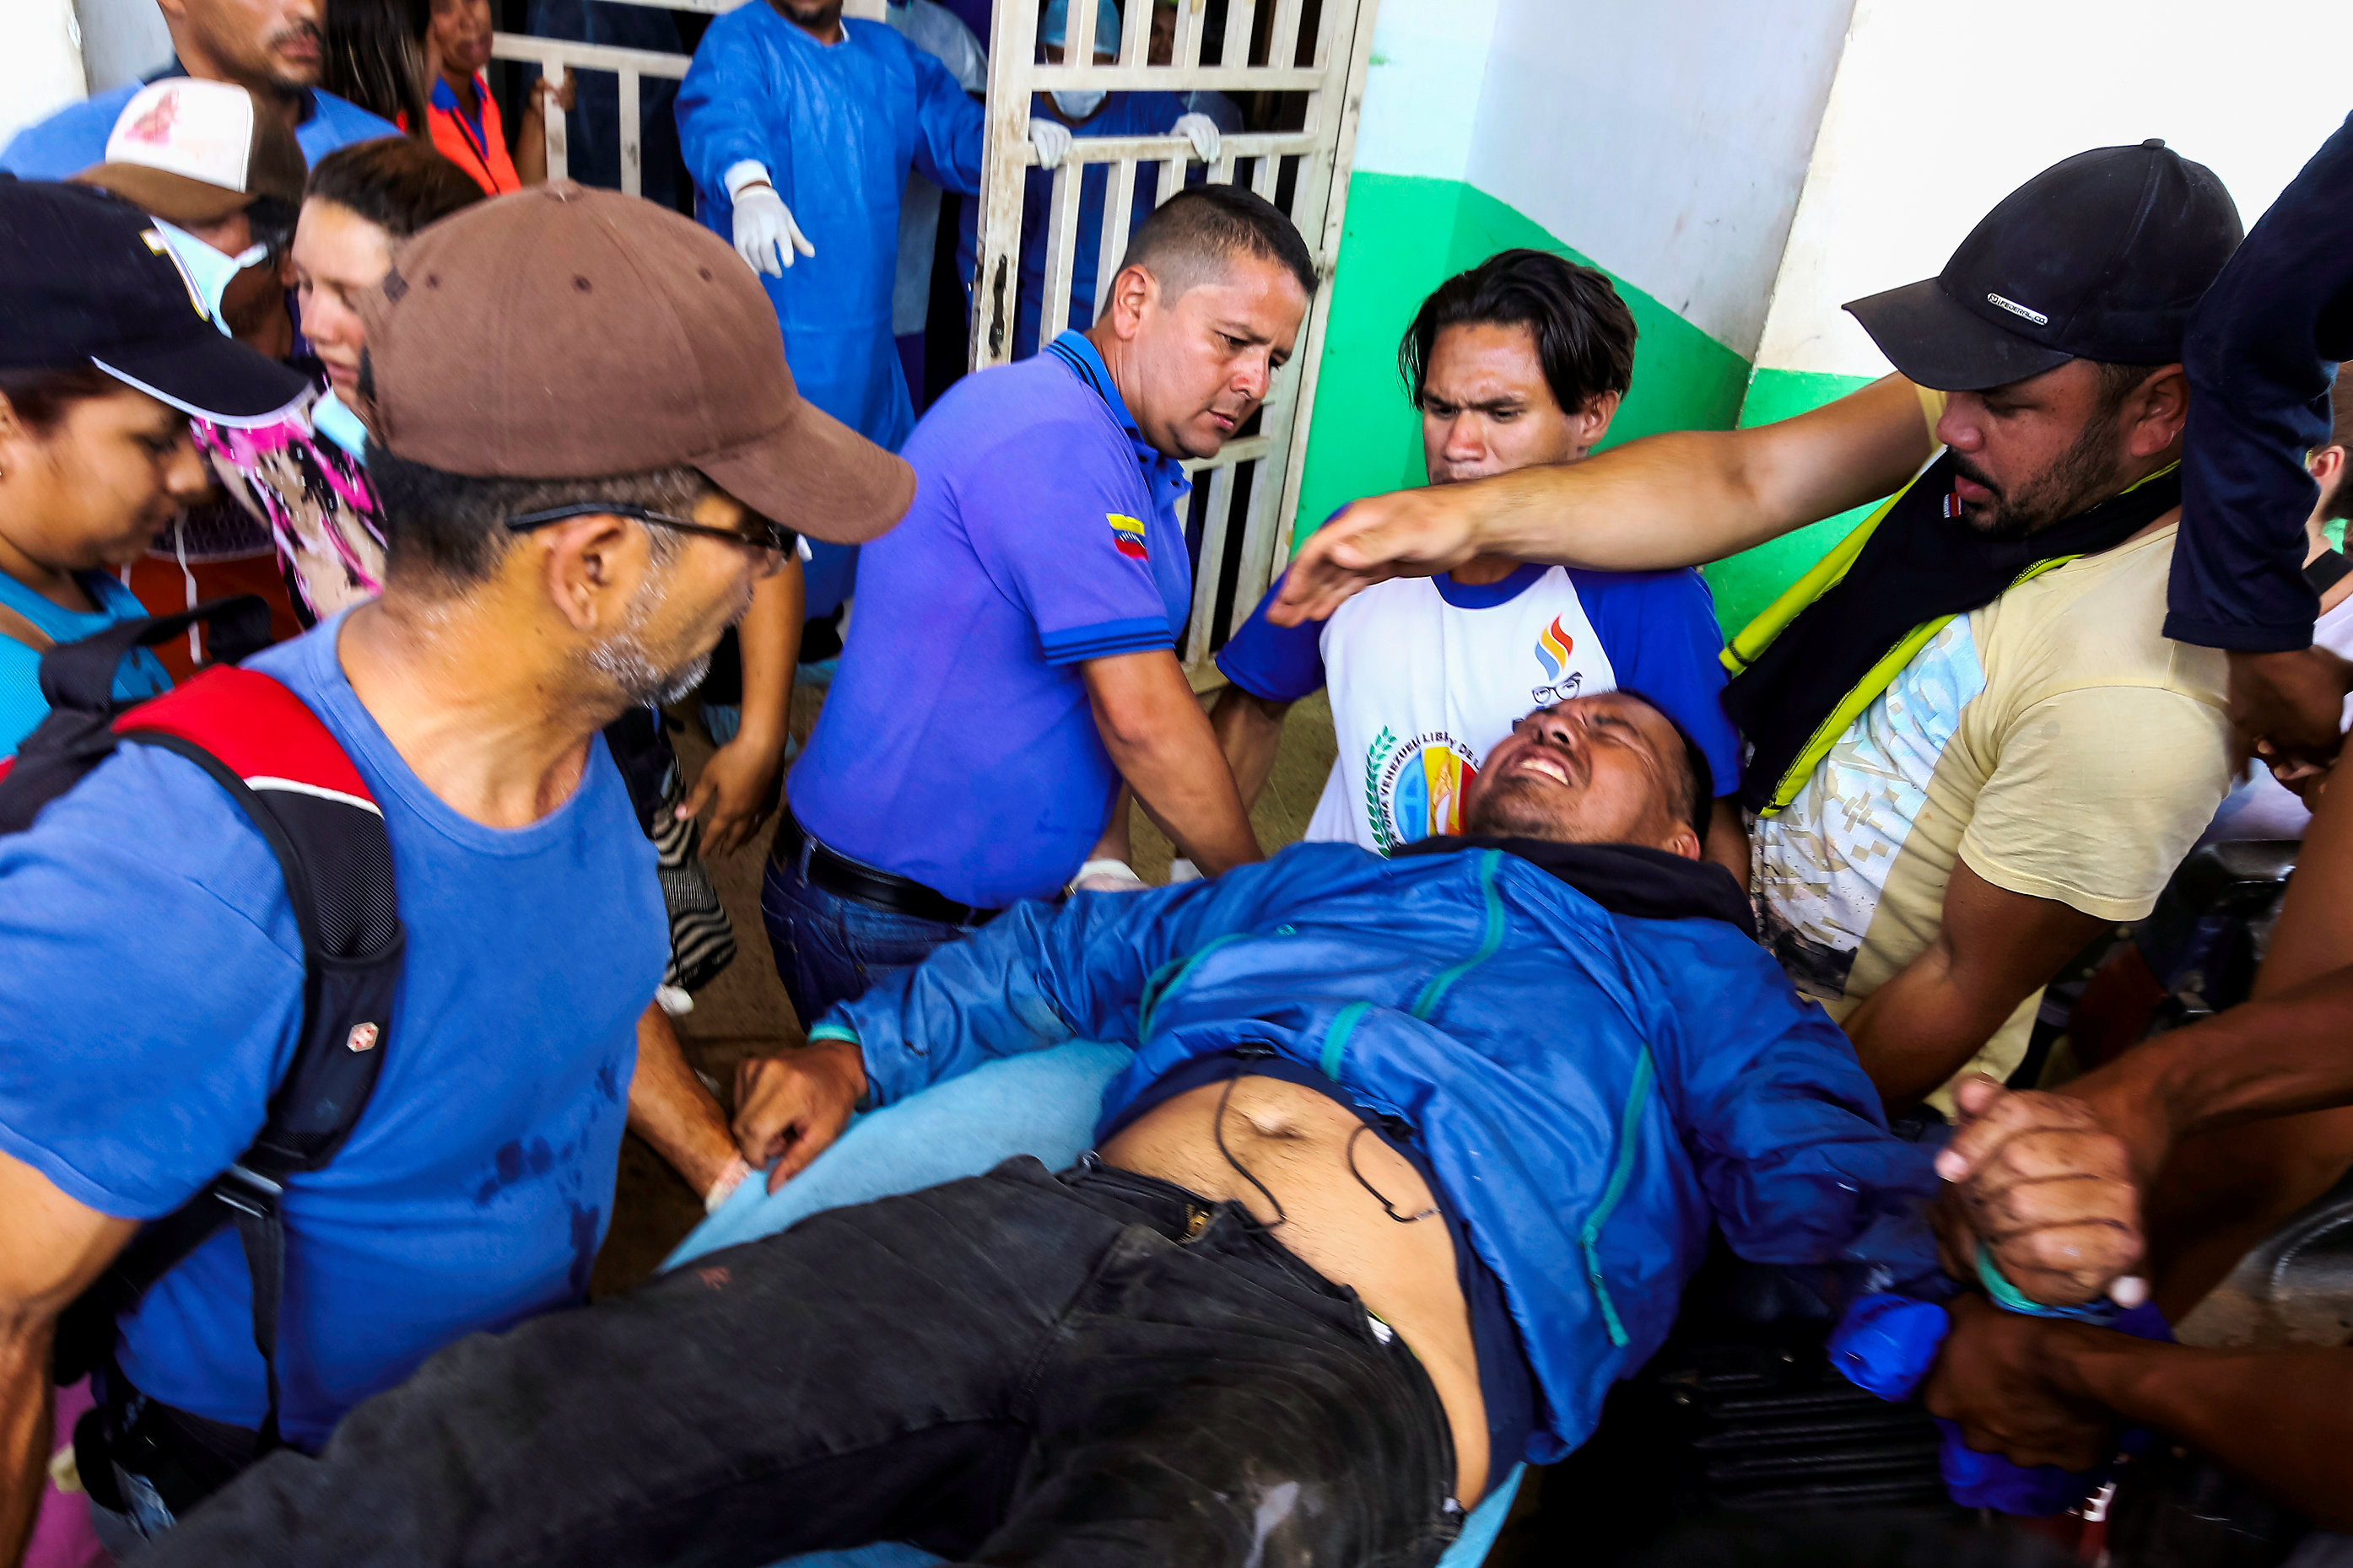 Fiscalía imputará a ocho personas por quema de un vehículo en Ureña, pero se olvida de los casi 300 heridos de la represión de Maduro